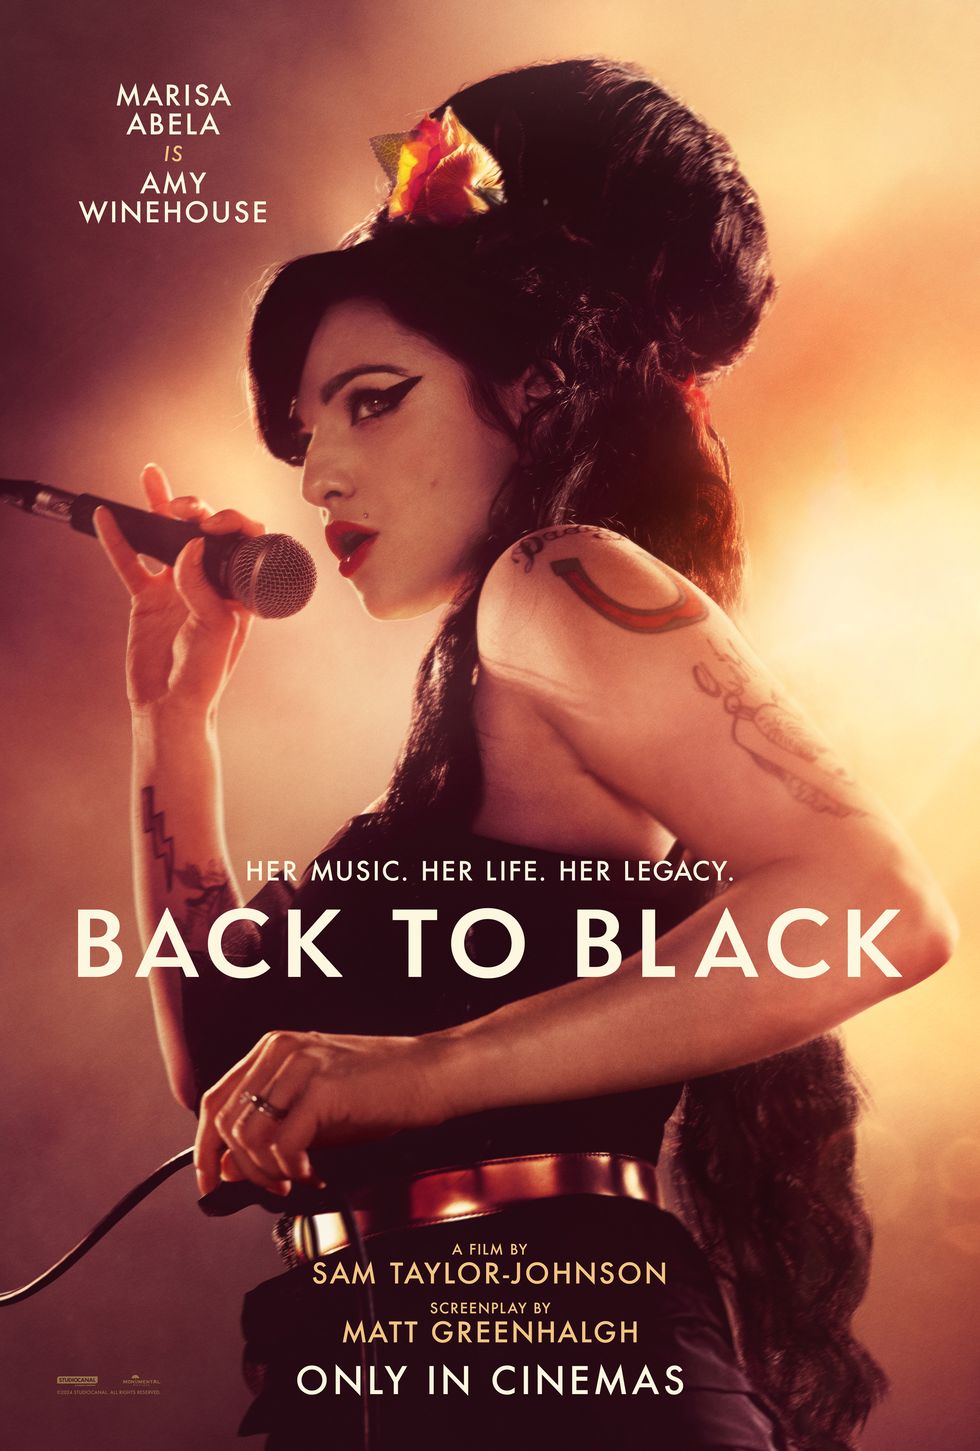 Marisa Abela als Amy Winehouse mit Mikrofon, zurück zum schwarzen Poster